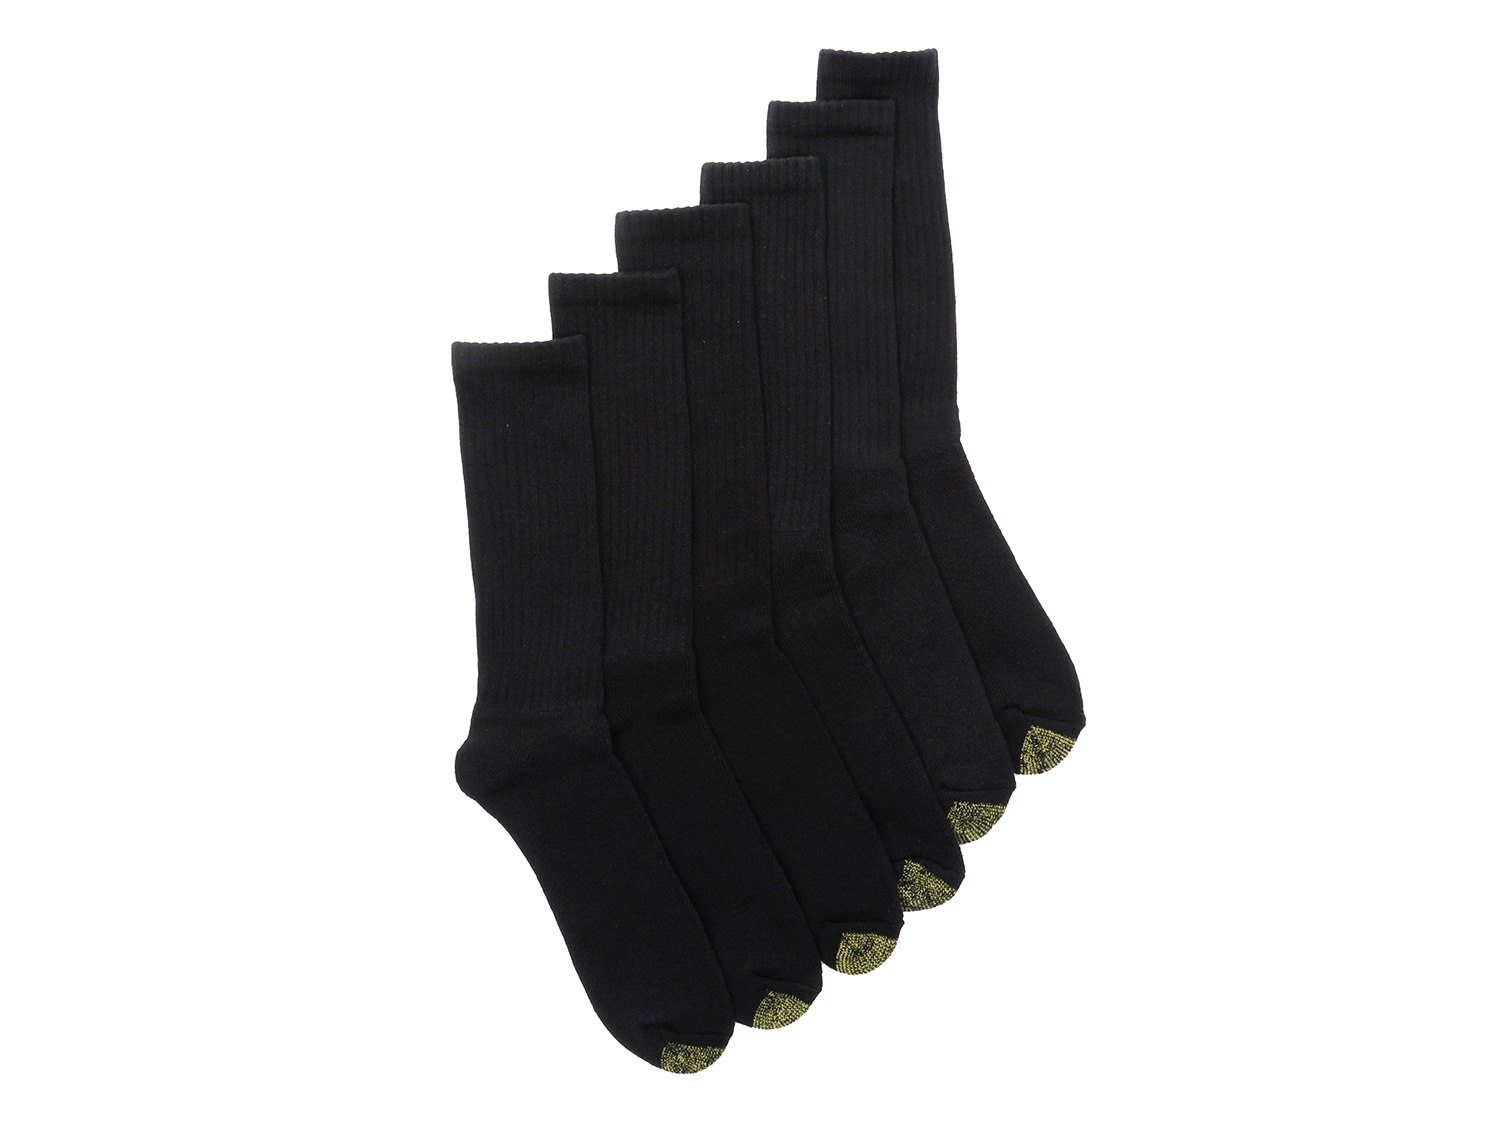 Gold Toe Harrington Men's Crew Socks - 6 Pack - Free Shipping | DSW